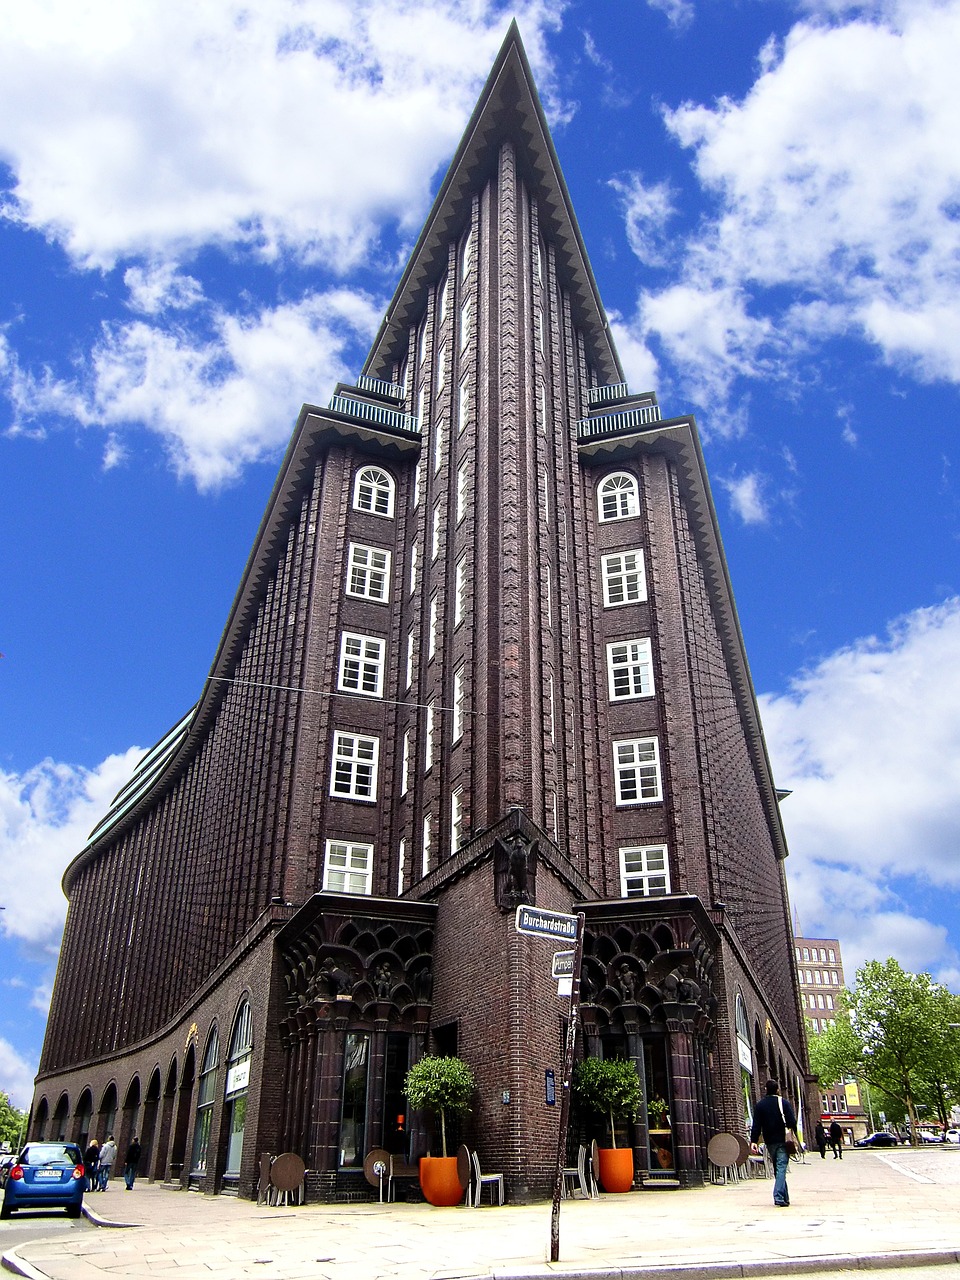 Fachada distintiva del edificio "Chilehaus" en Hamburgo, Alemania